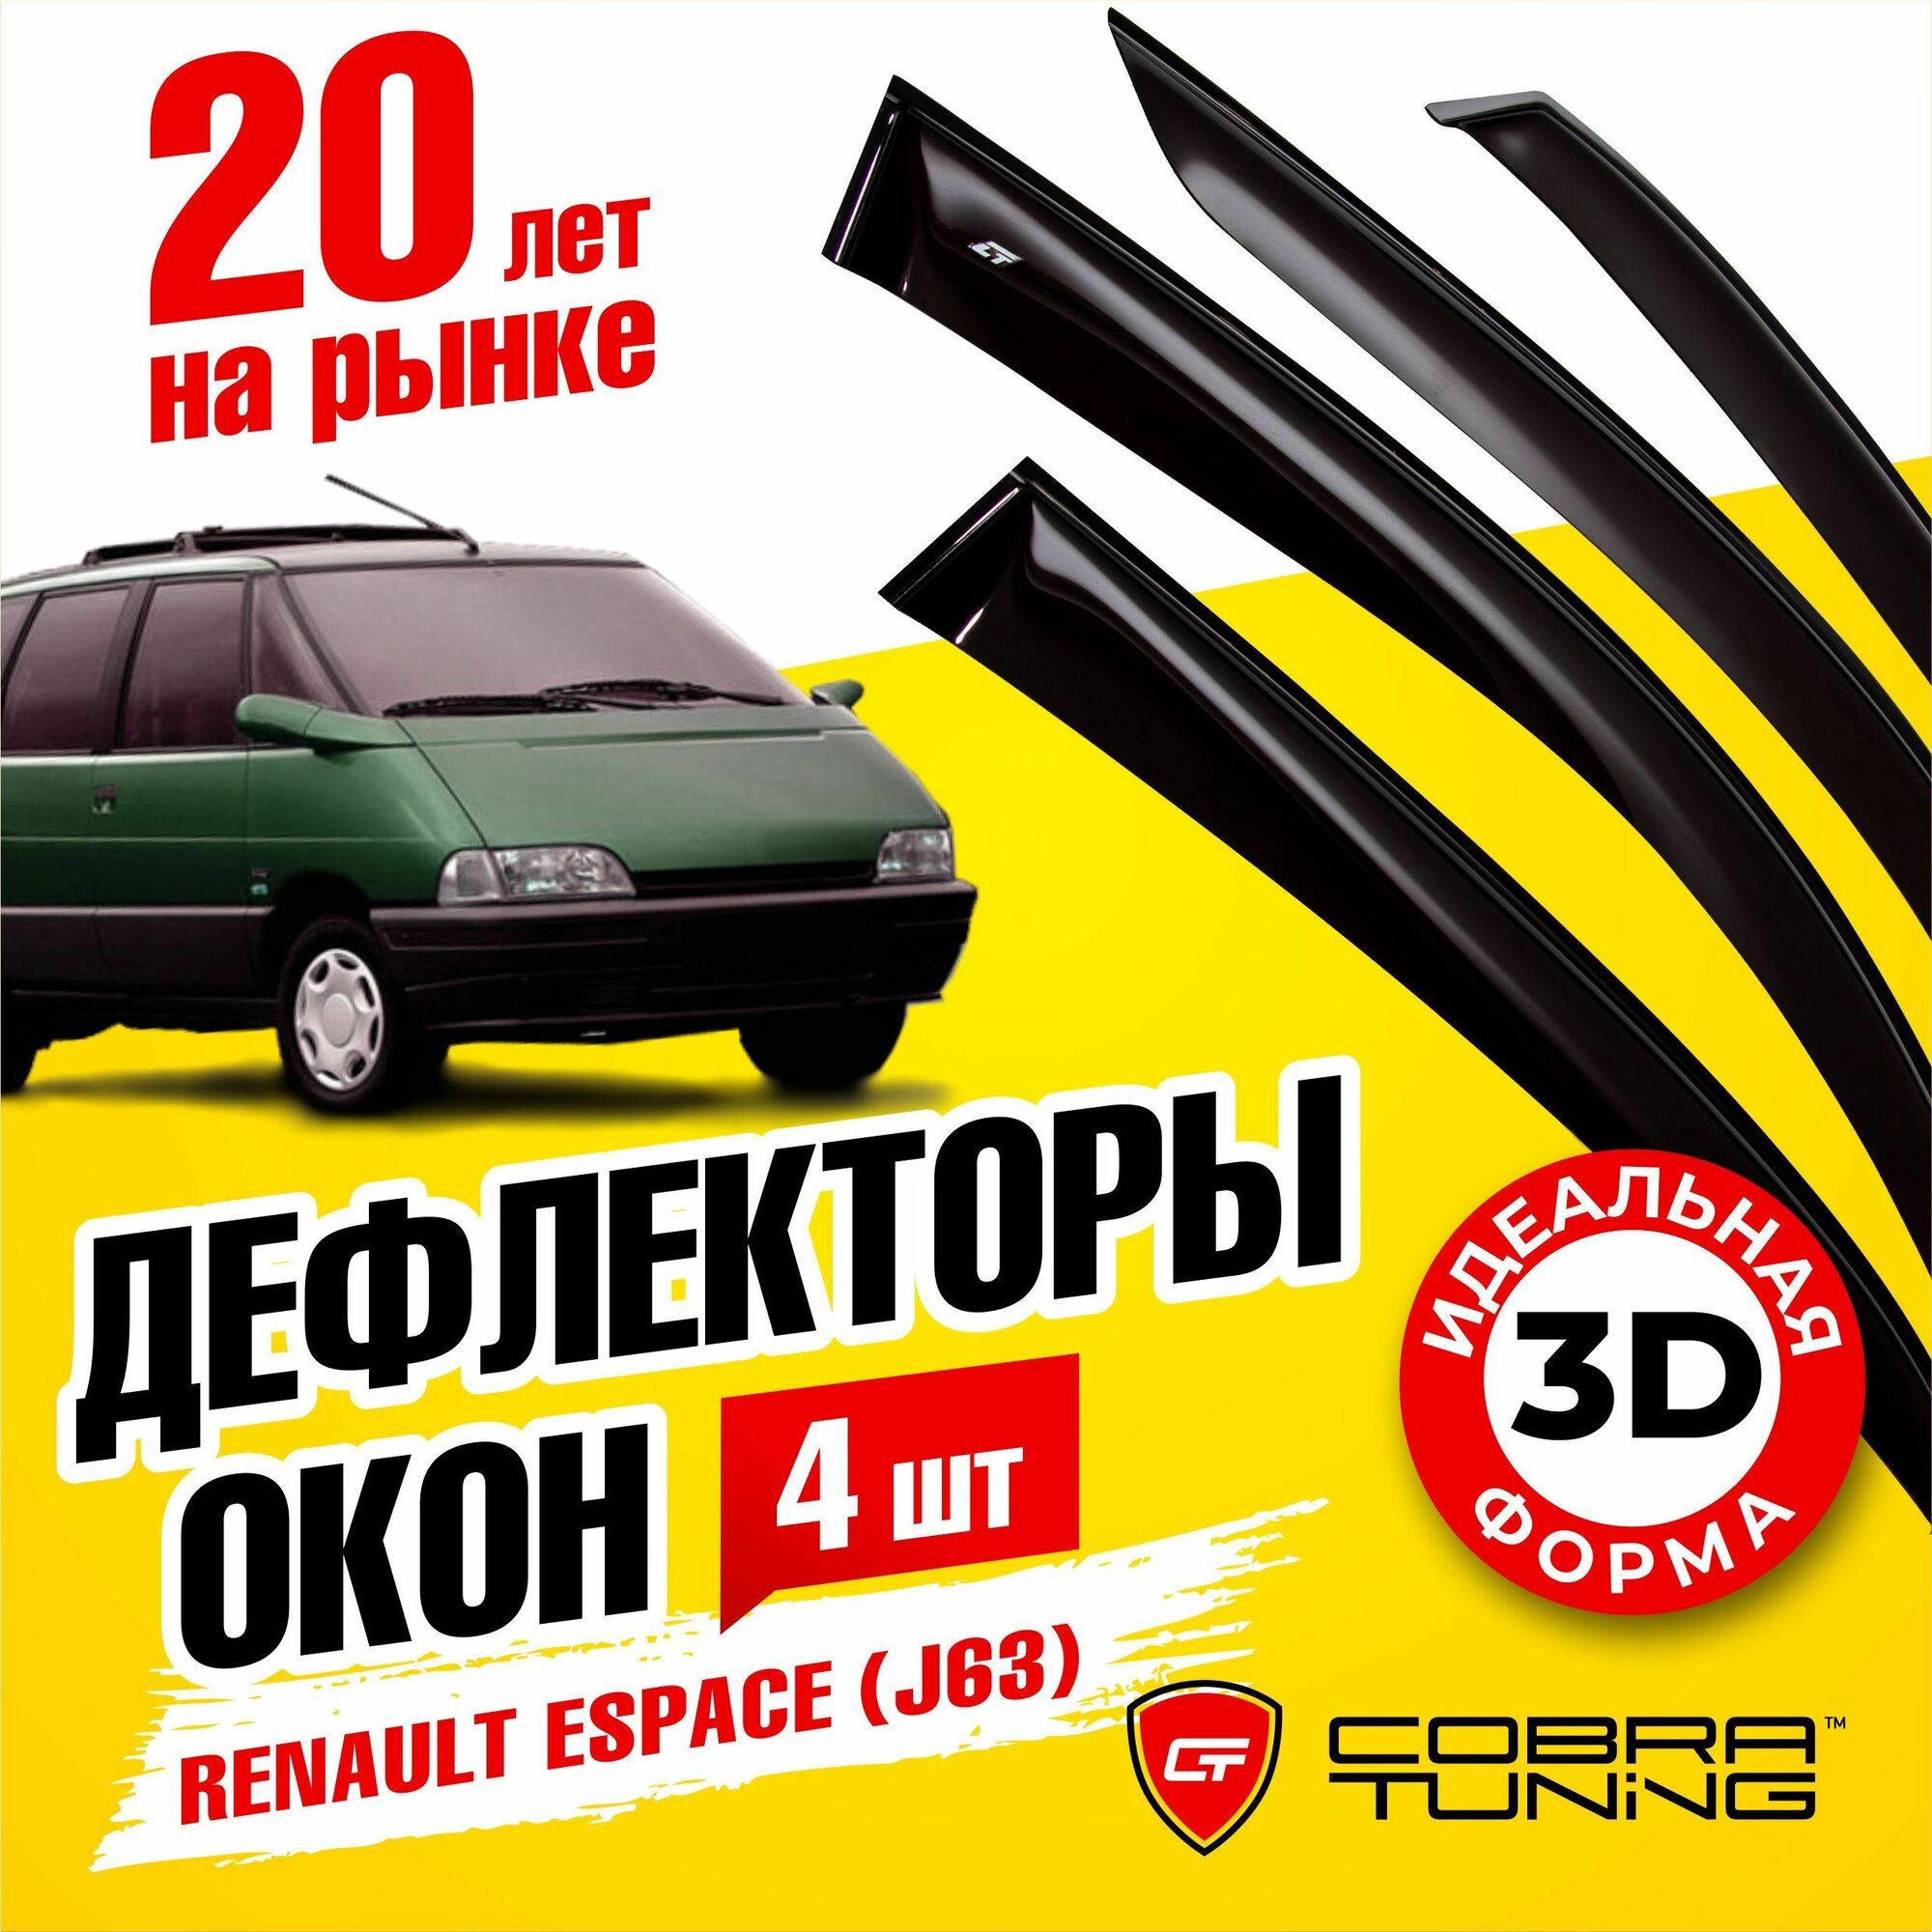 Дефлекторы боковых окон для Renault Espace (Рено Эспейс) (J63) 1991-1996 ветровики на двери автомобиля Cobra Tuning